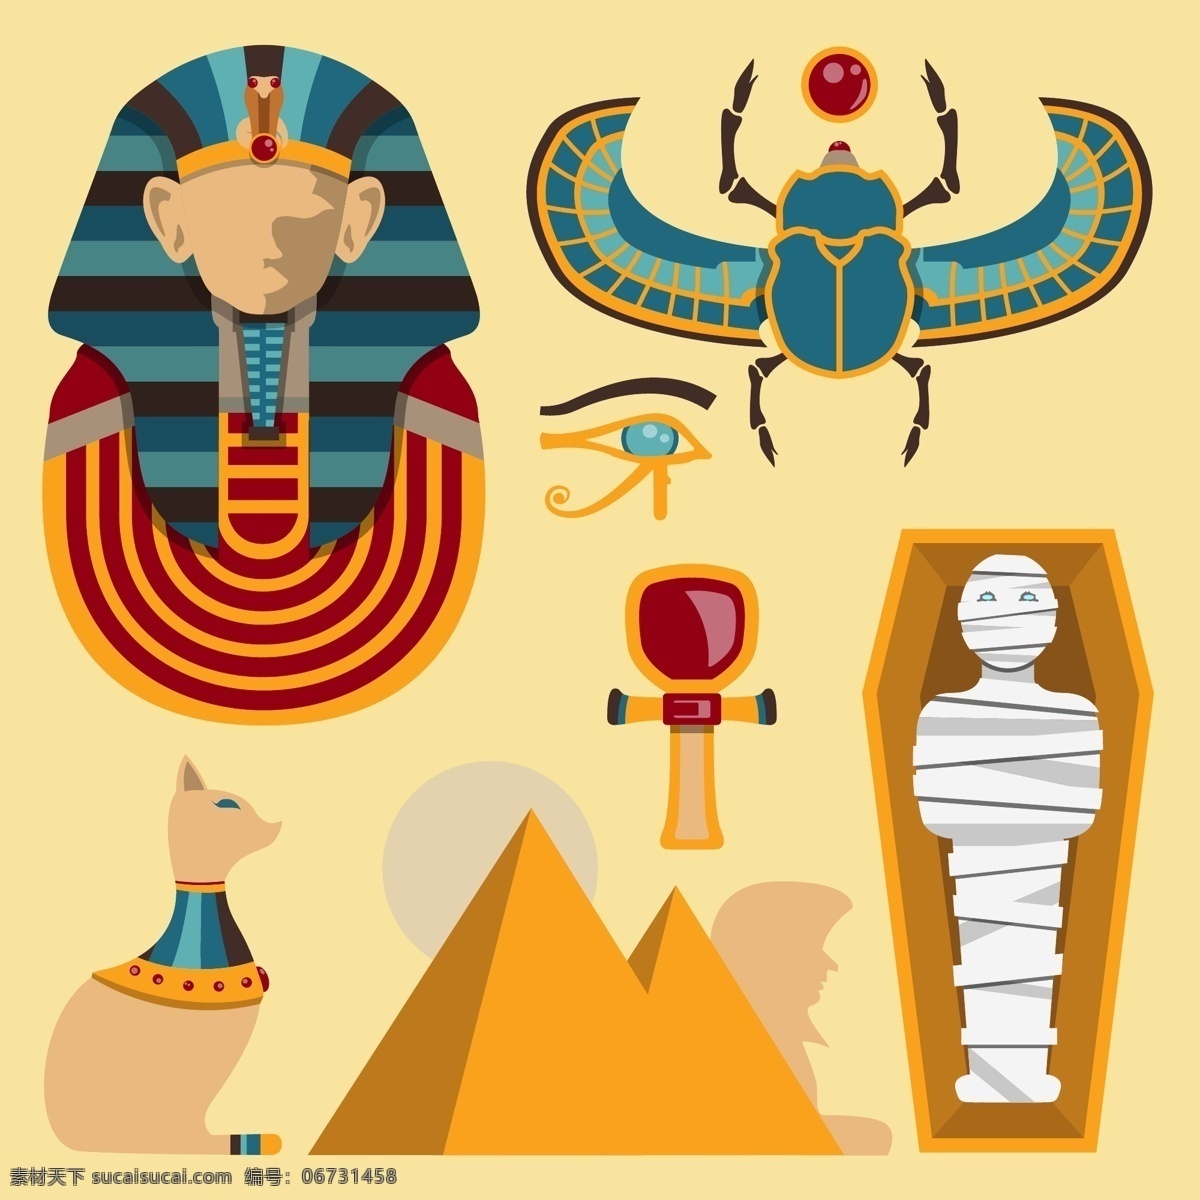 埃及文化元素 埃及 埃及文化 埃及文明 法老 金字塔 狮身人 传统文化 埃及传统 世界古国 传统古国 埃及古国 埃及旅游 旅游 世界文化 木乃伊 黄色